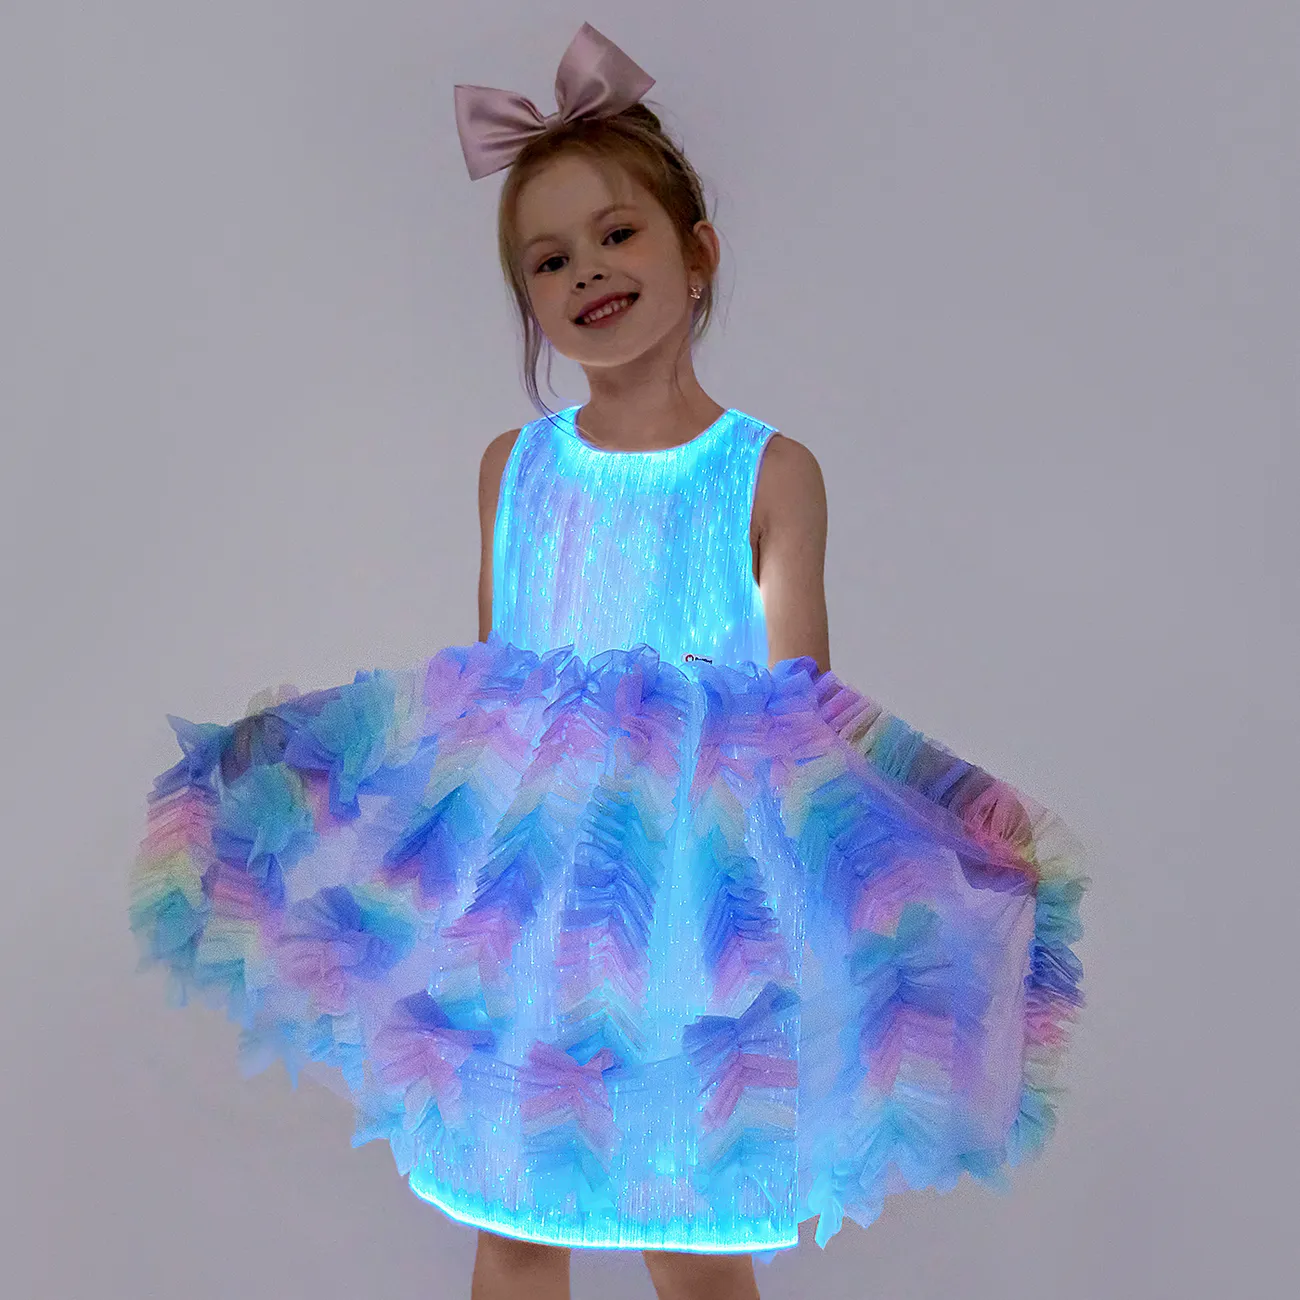 Go-Glow leuchtendes buntes Prinzessinnen-Partykleid mit Rüschenrock inklusive Controller (eingebauter Akku) Mehrfarbig big image 1